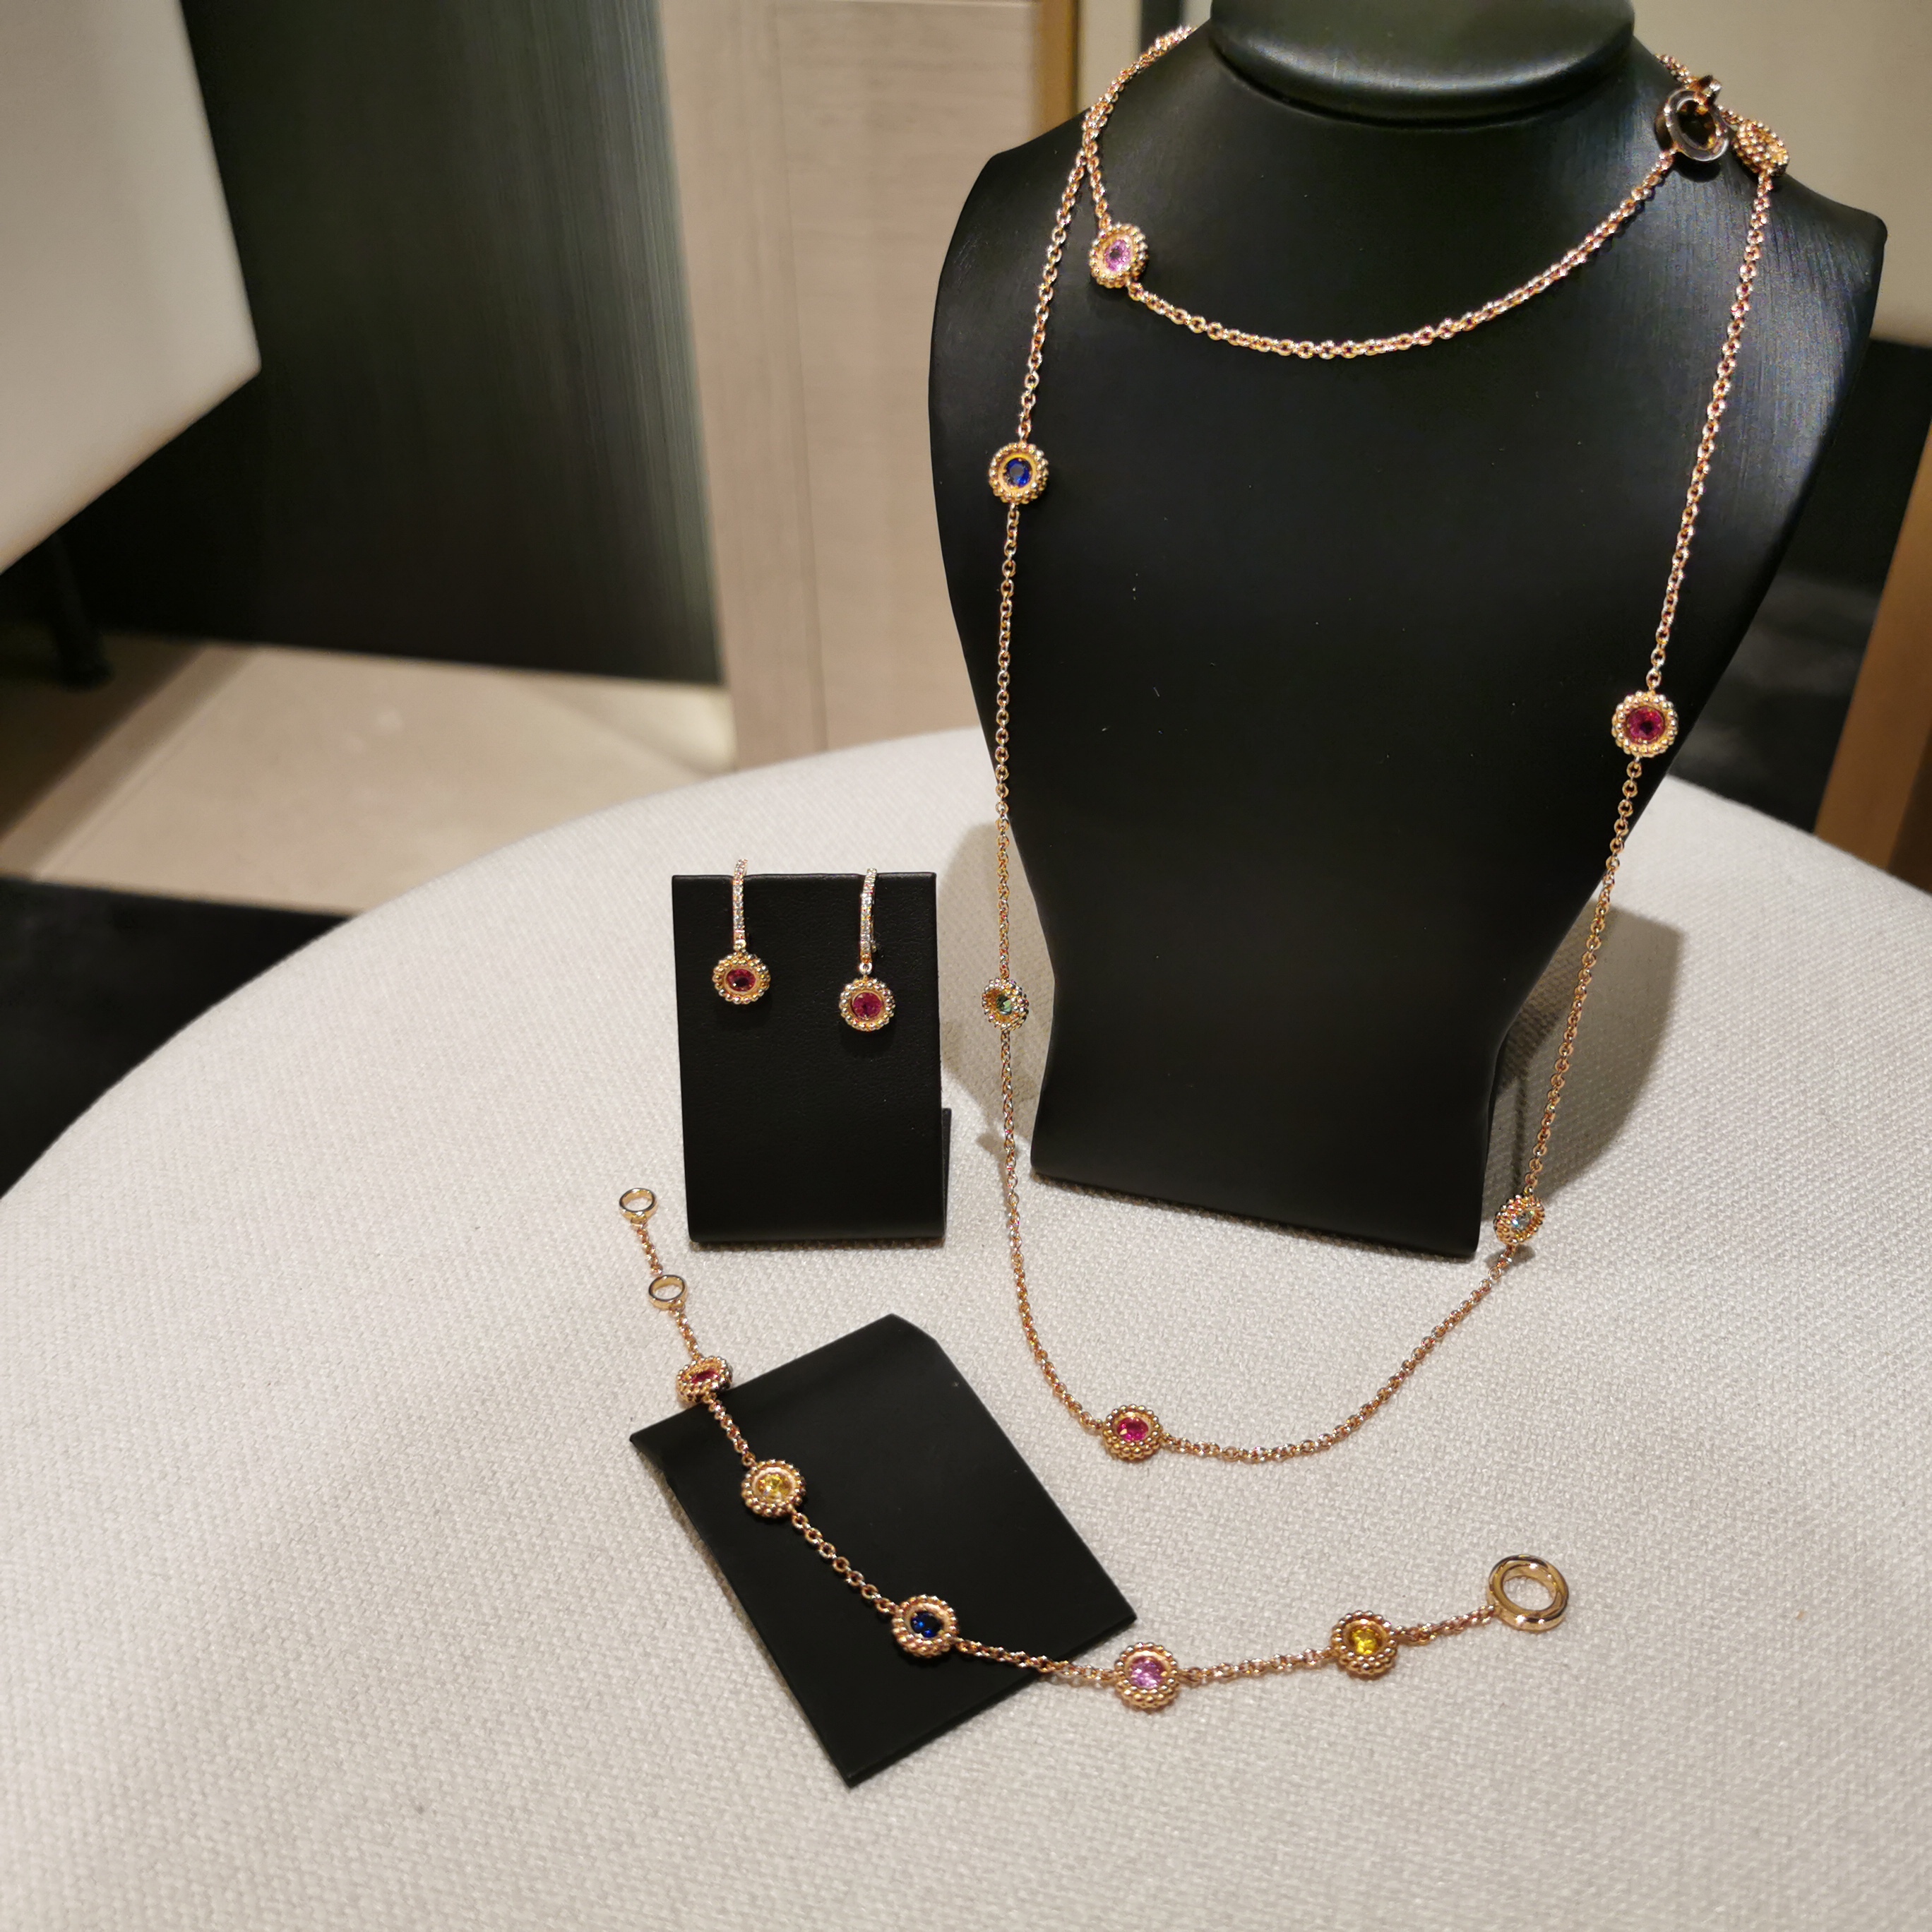 Piero Milano jewelry set with saphires